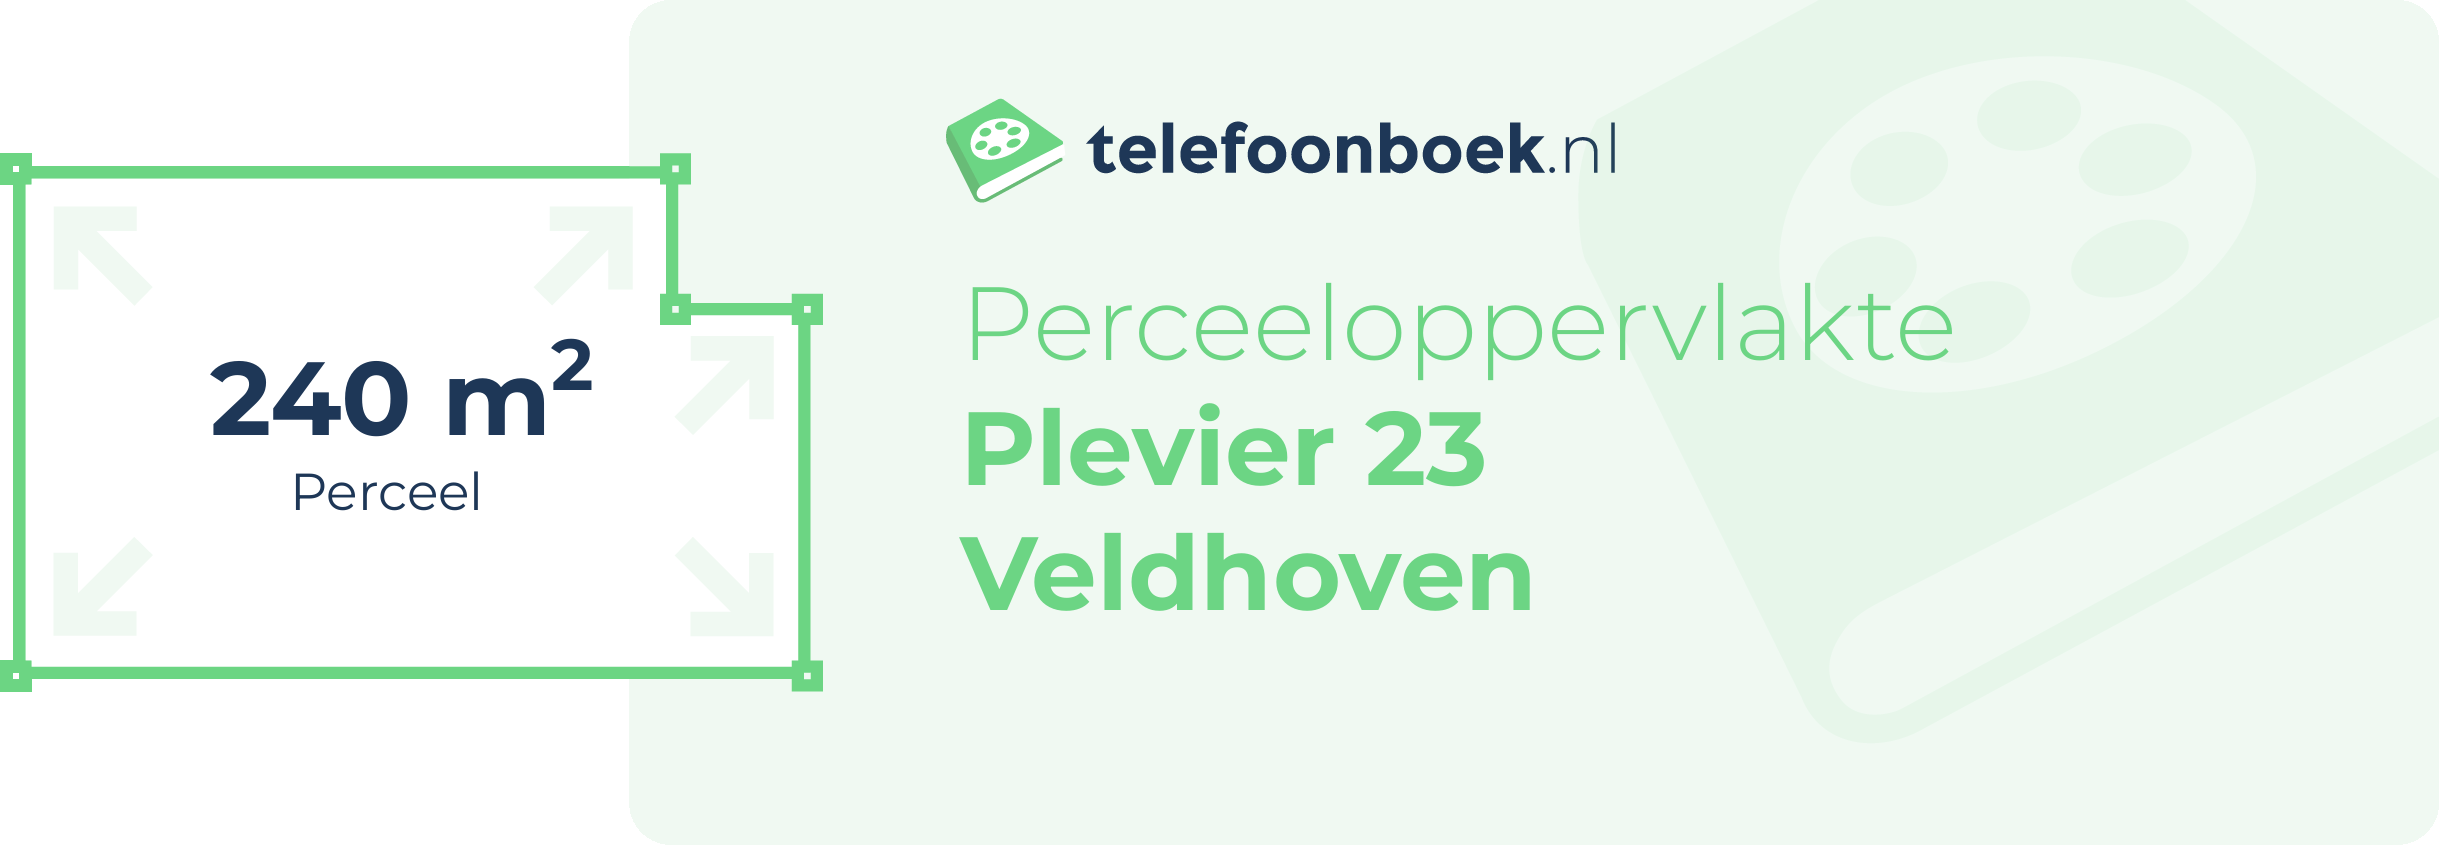 Perceeloppervlakte Plevier 23 Veldhoven